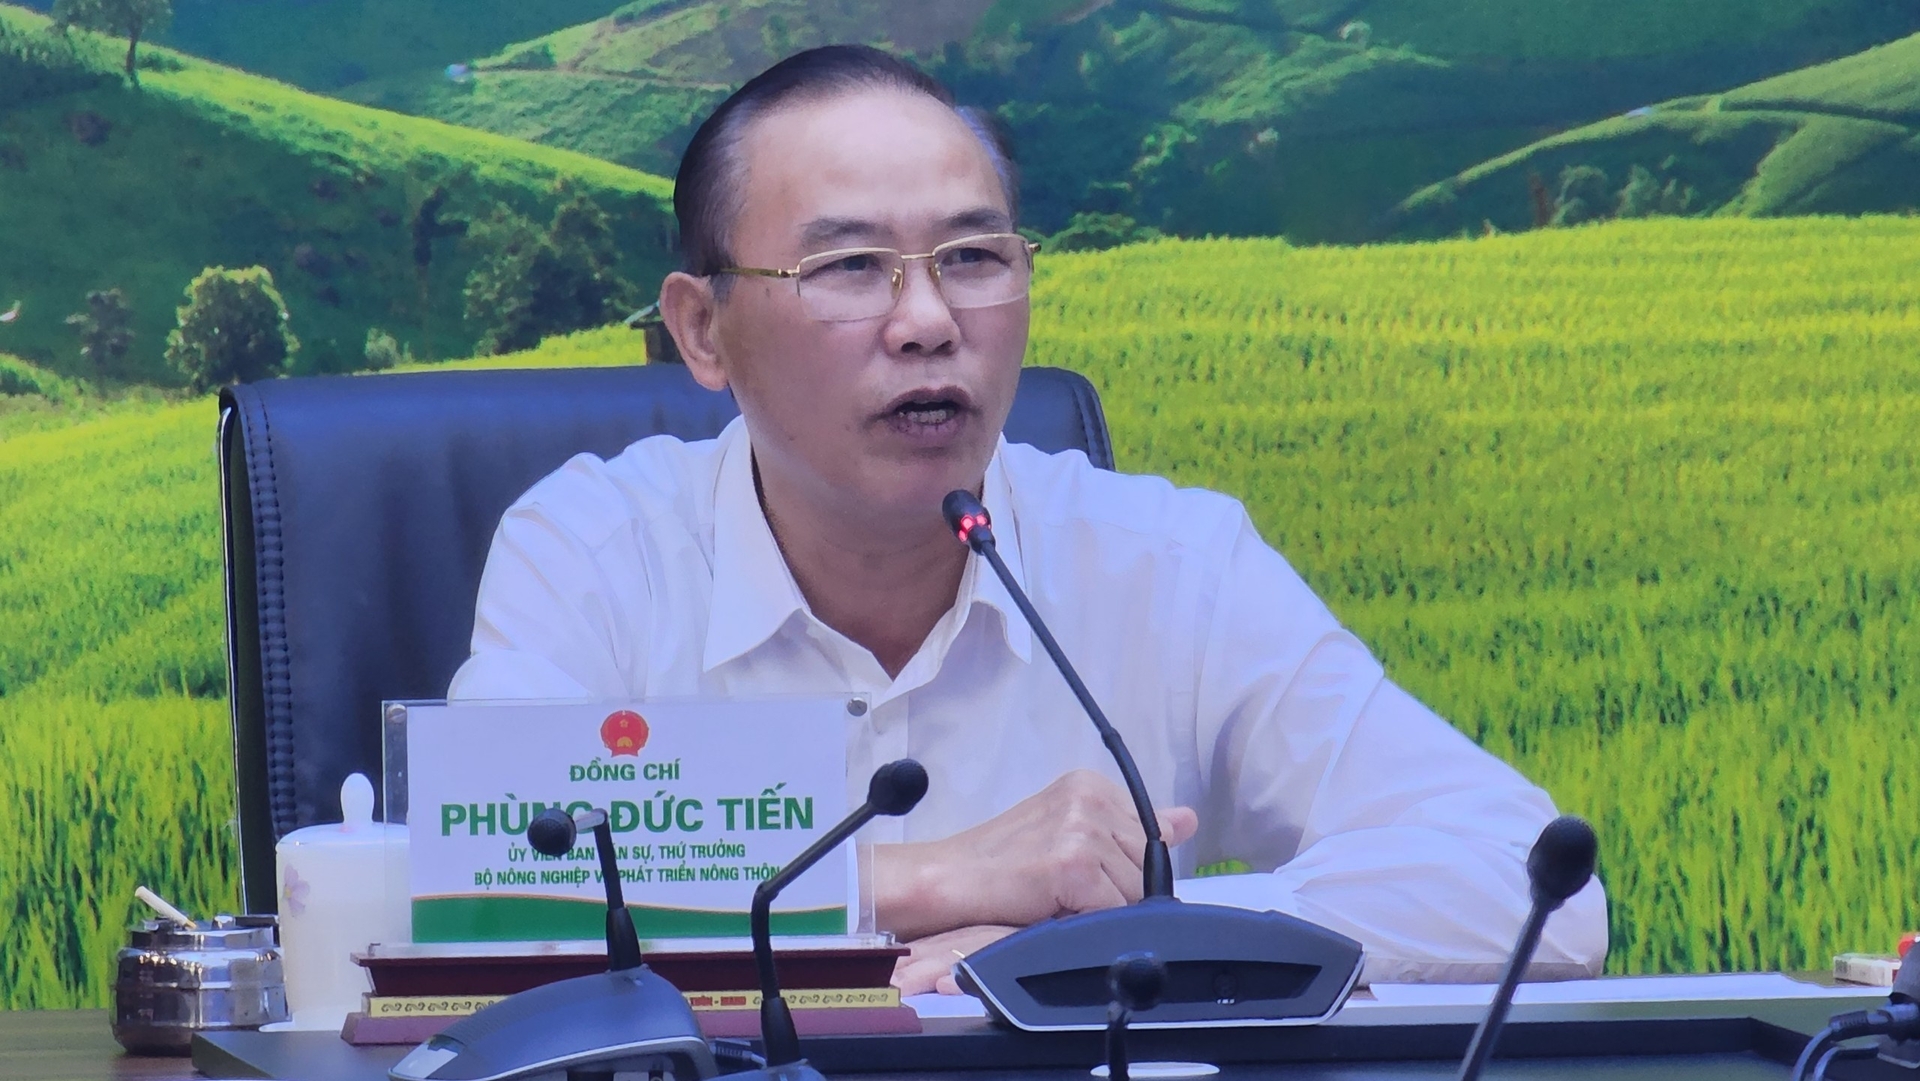 Thứ trưởng Bộ NN-PTNT Phùng Đức Tiến nói: 'Chúng ta cần phải nghiêm túc xử lý, để lúc EC sang thanh tra họ thấy rằng Việt Nam đã thực sự cầu thị, thực sự hành động'. Ảnh: Quang Dũng.